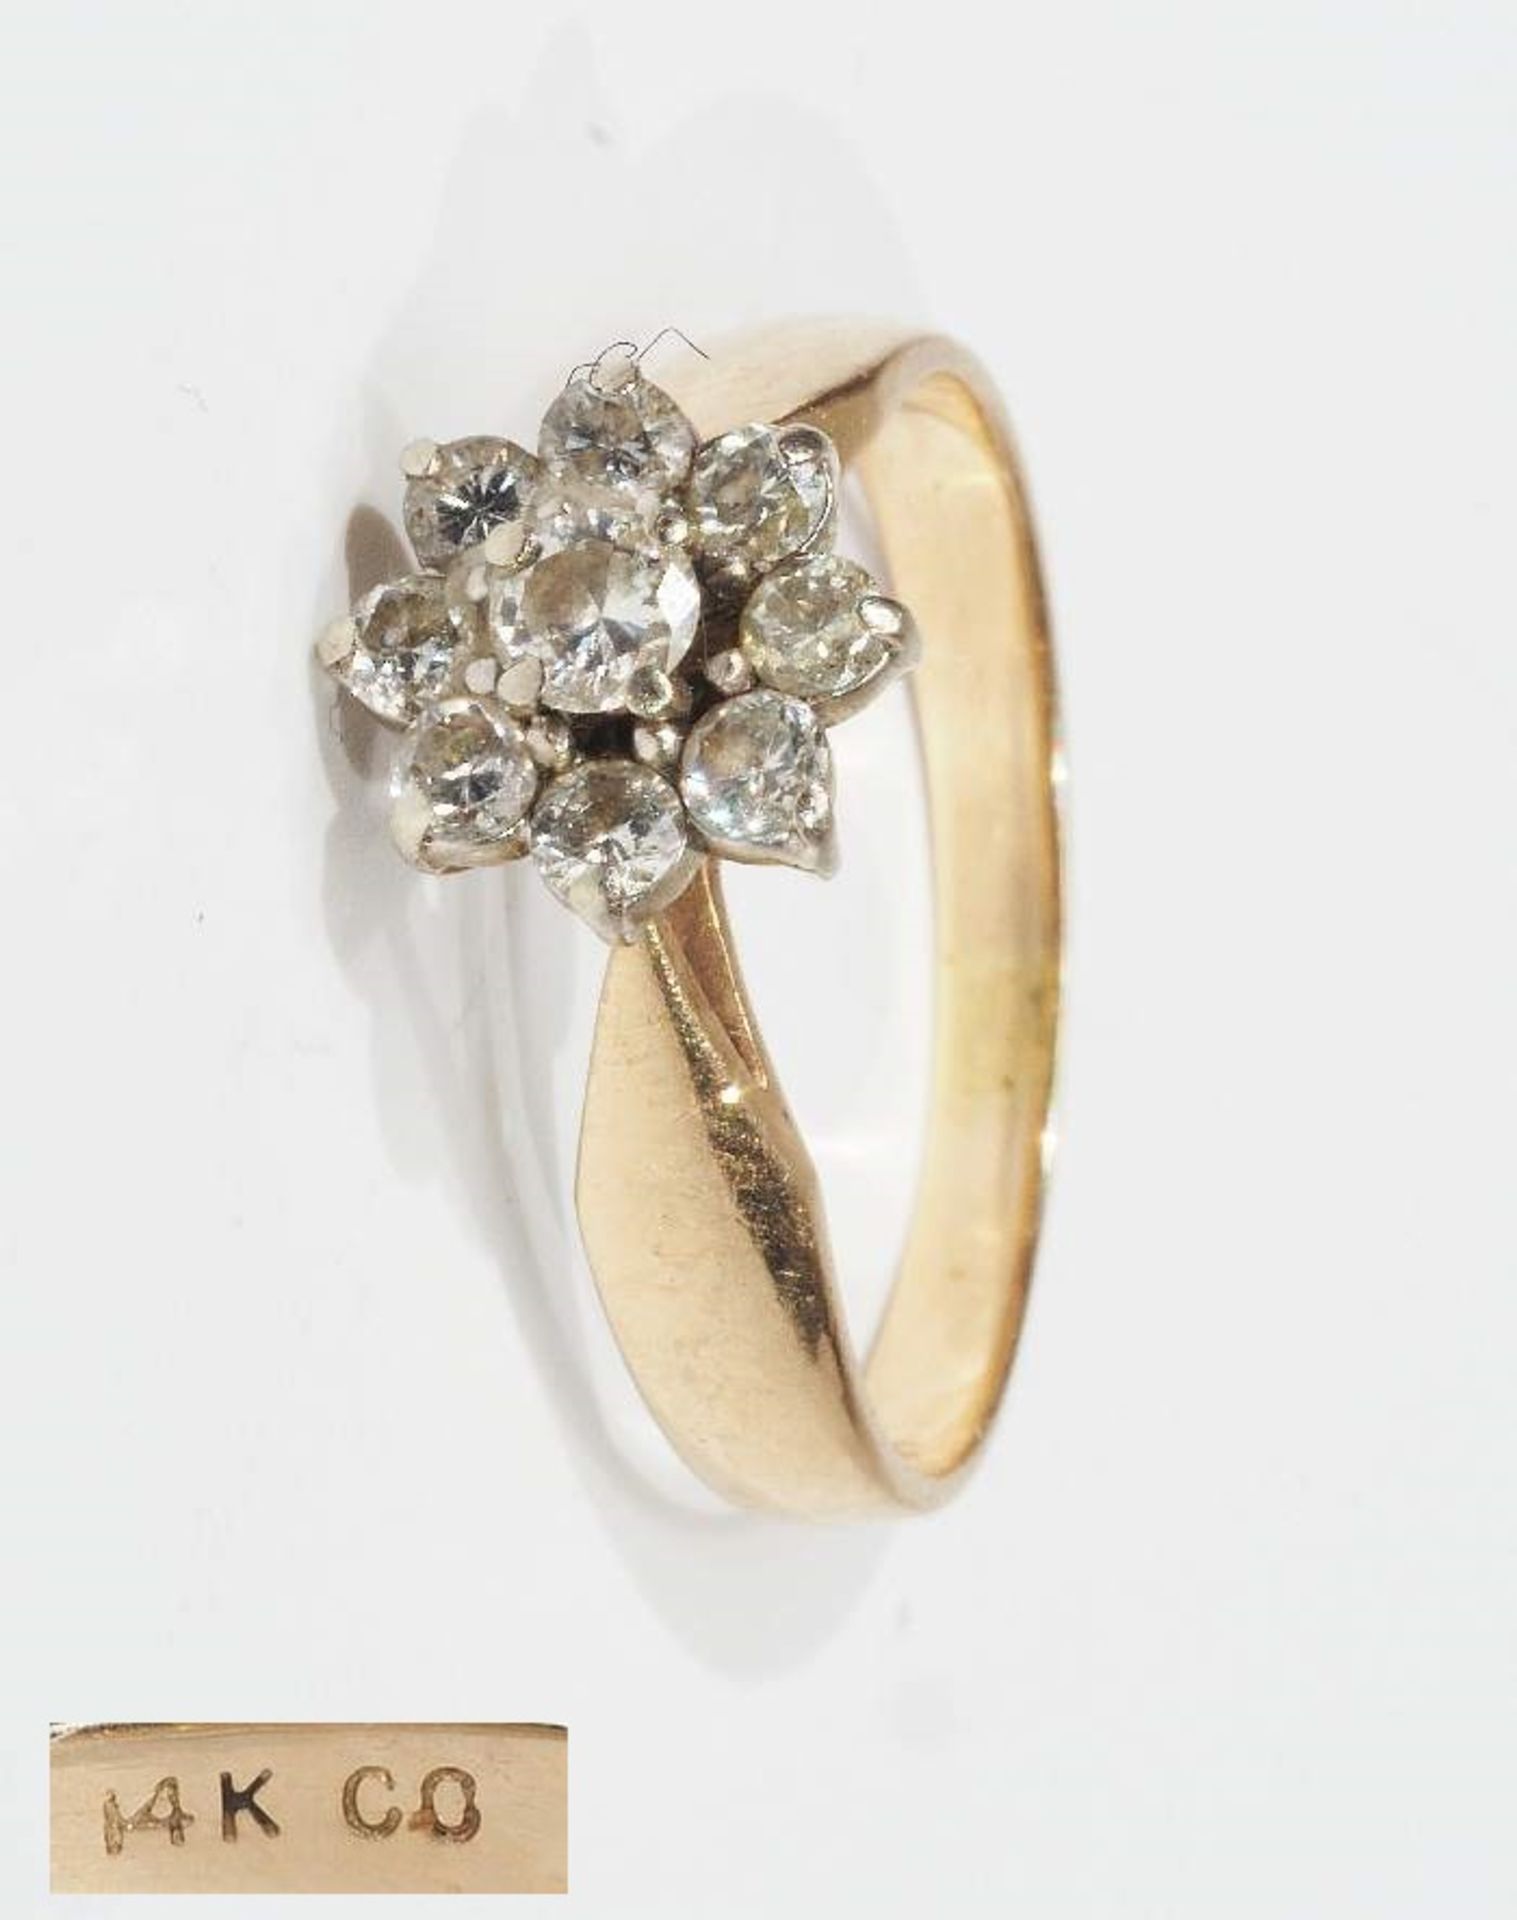 Ring mit Brillantrosette. 585er Gelbgold. Brillantbesatz von ca. 0,40 ct. J-K/i-p1, Ringgröße 55,